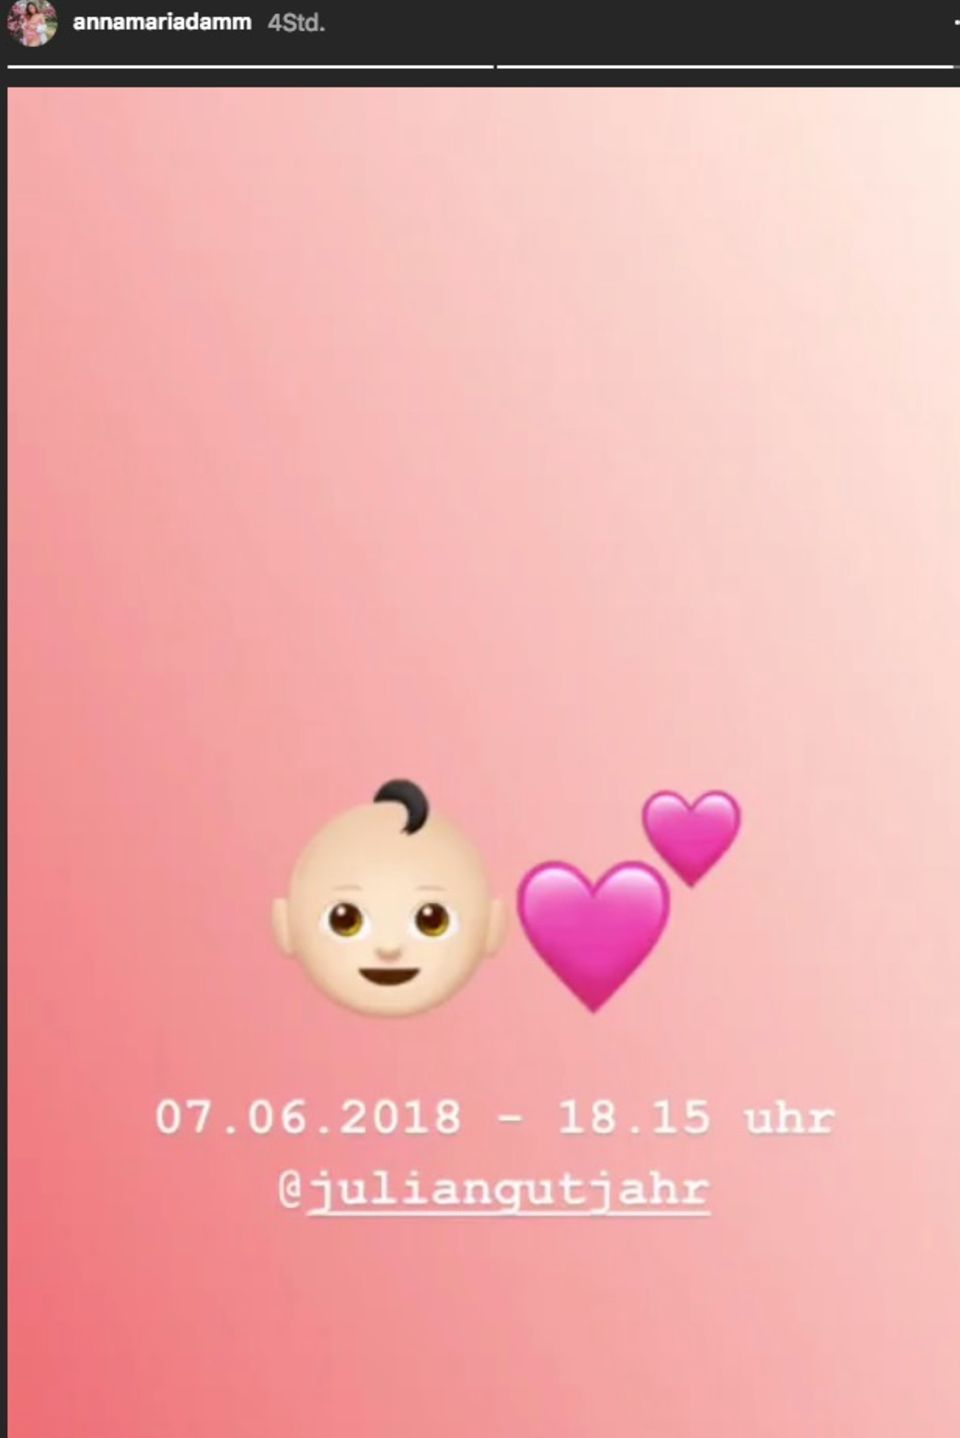 Anna Maria Damm verkündet die Geburt ihrer Tochter per Instagram Story. 